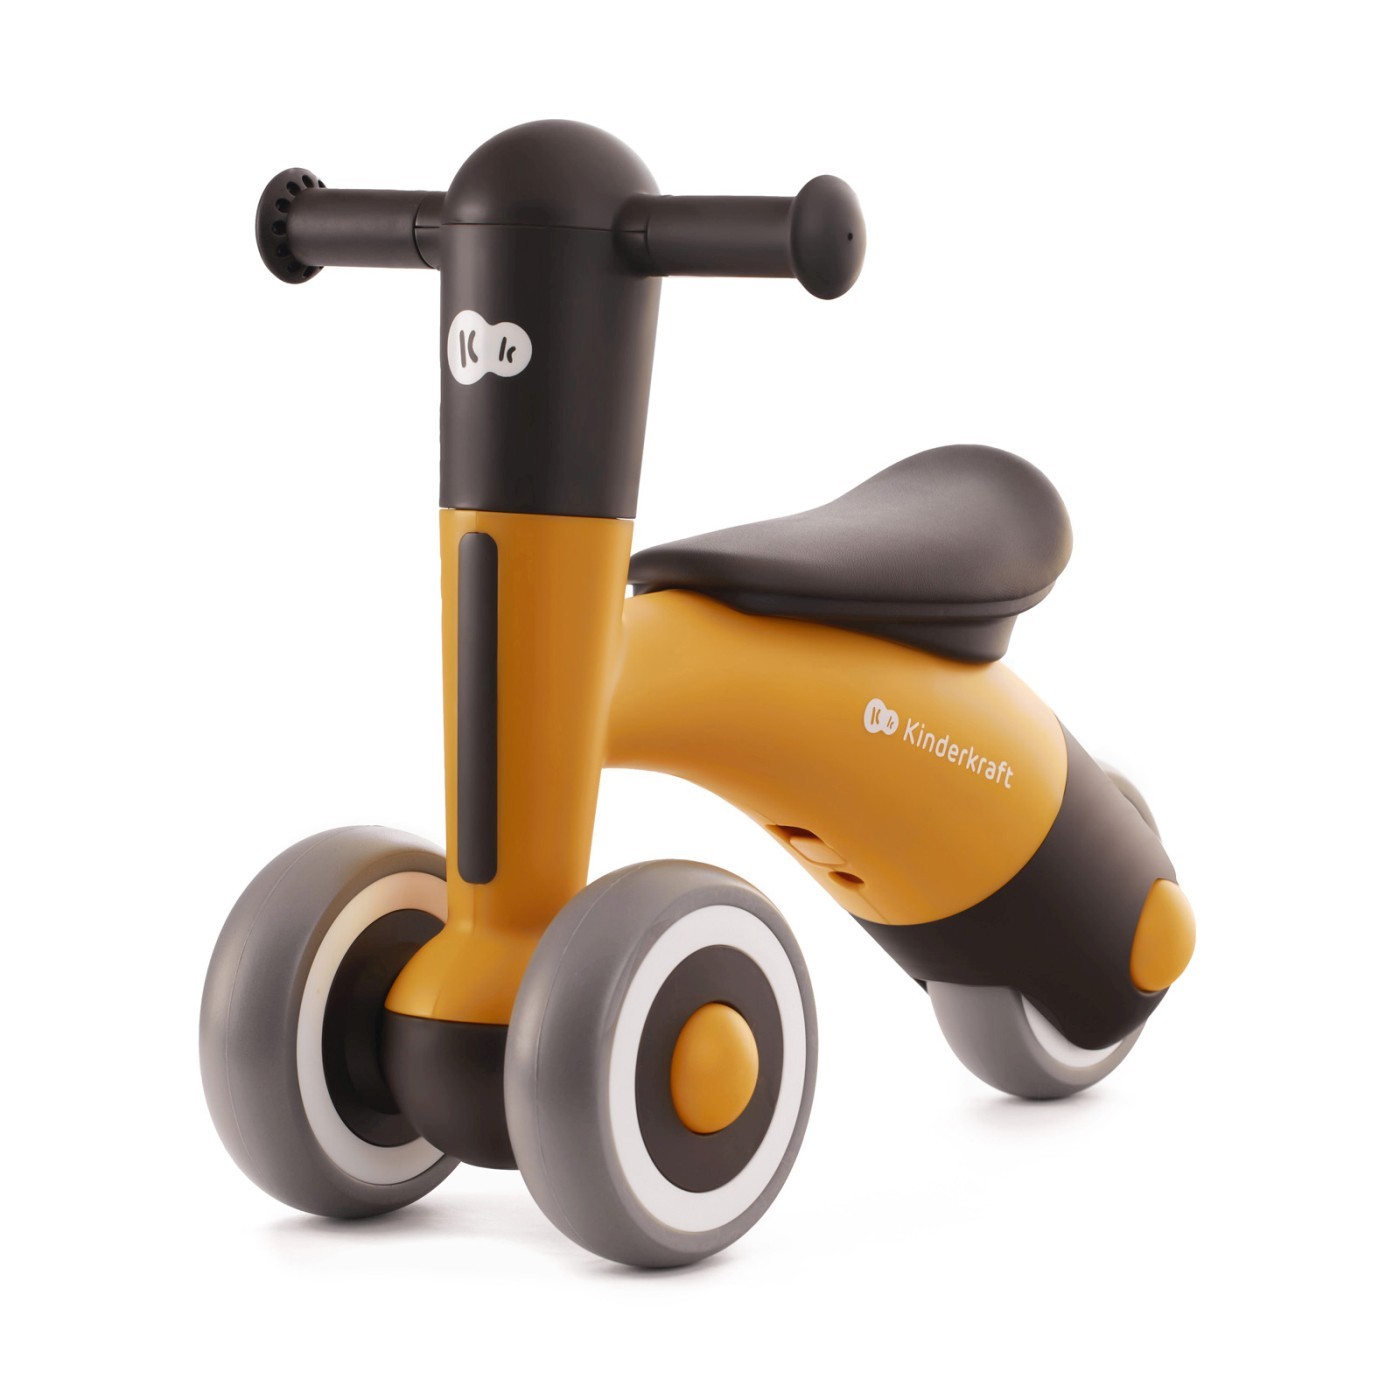 Tricicleta de echilibru Minibi, Honey Yellow, Kinderkraft